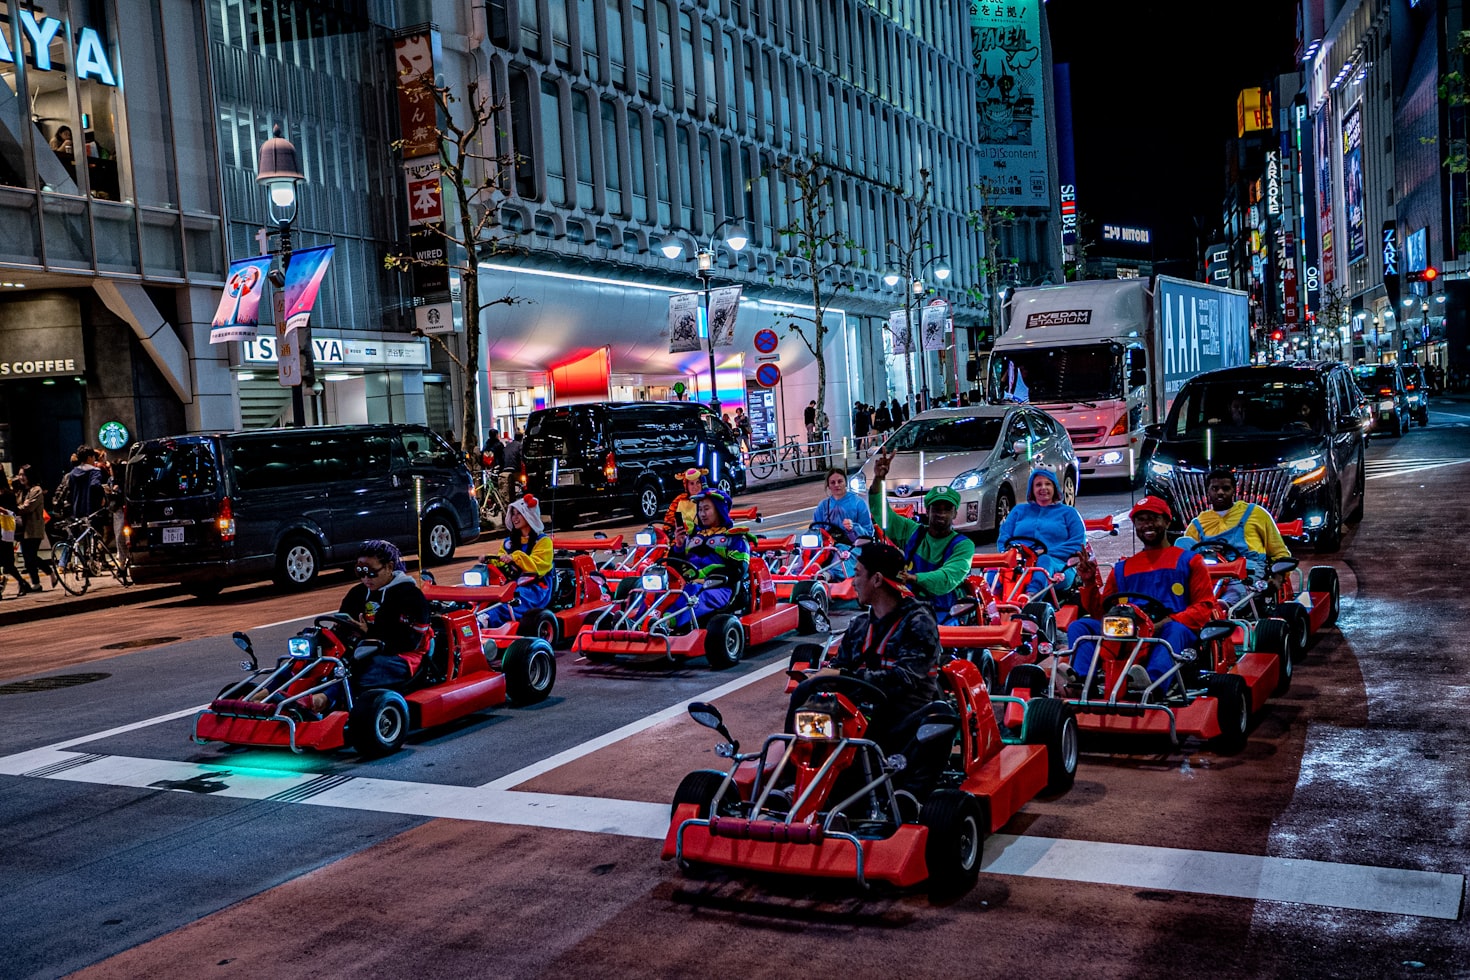 Mario Kart en vrai au Japon - Drivinjapan.com